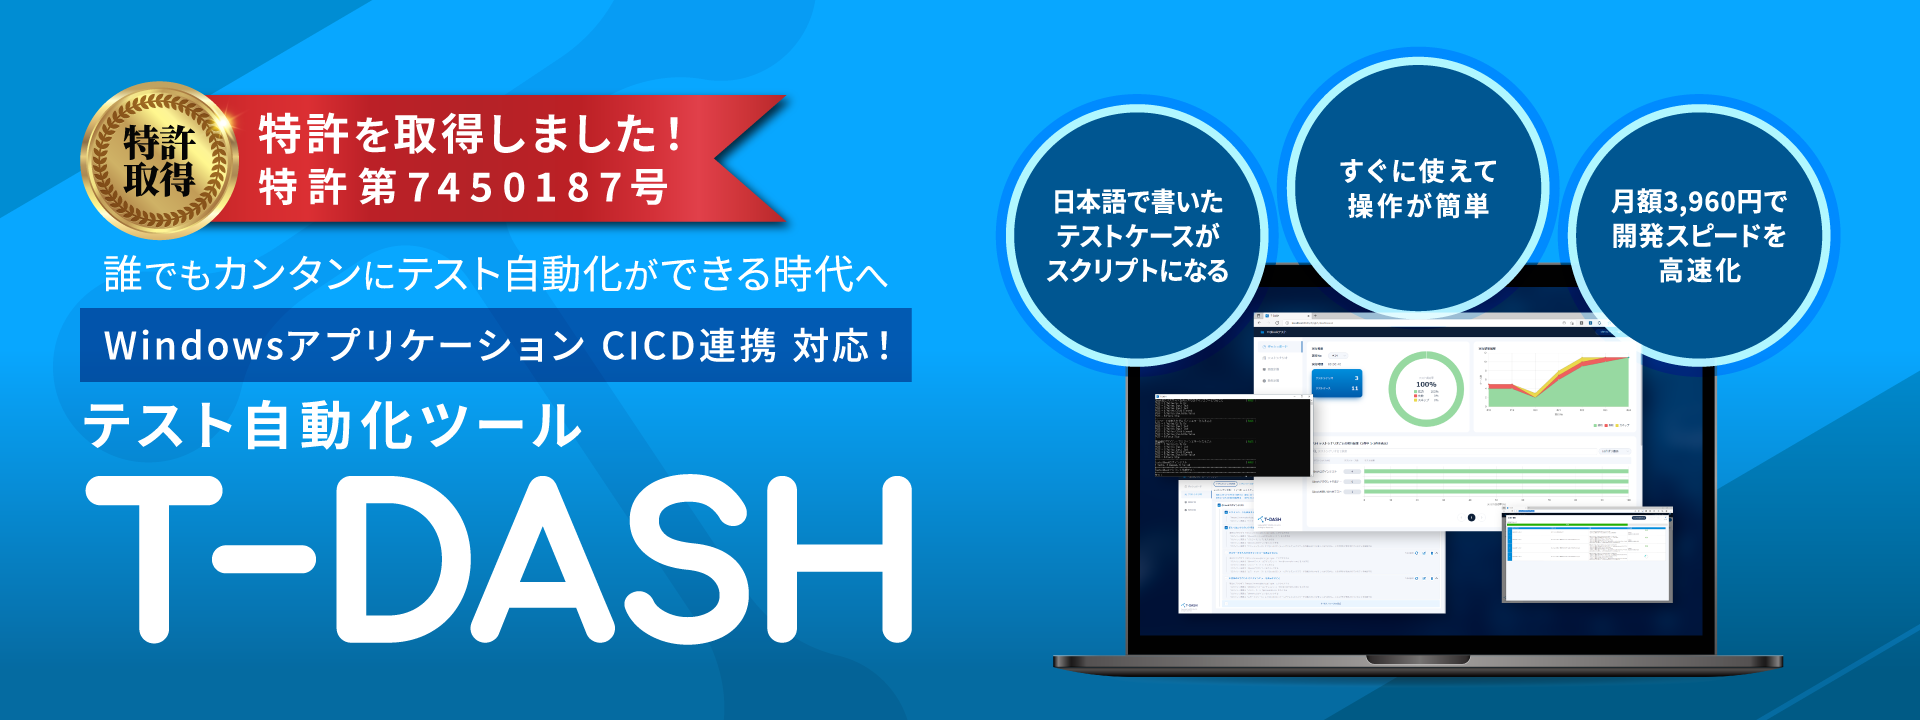 ローコードテスト自動化ツール T-DASH - 日本語でつくるテスト自動化